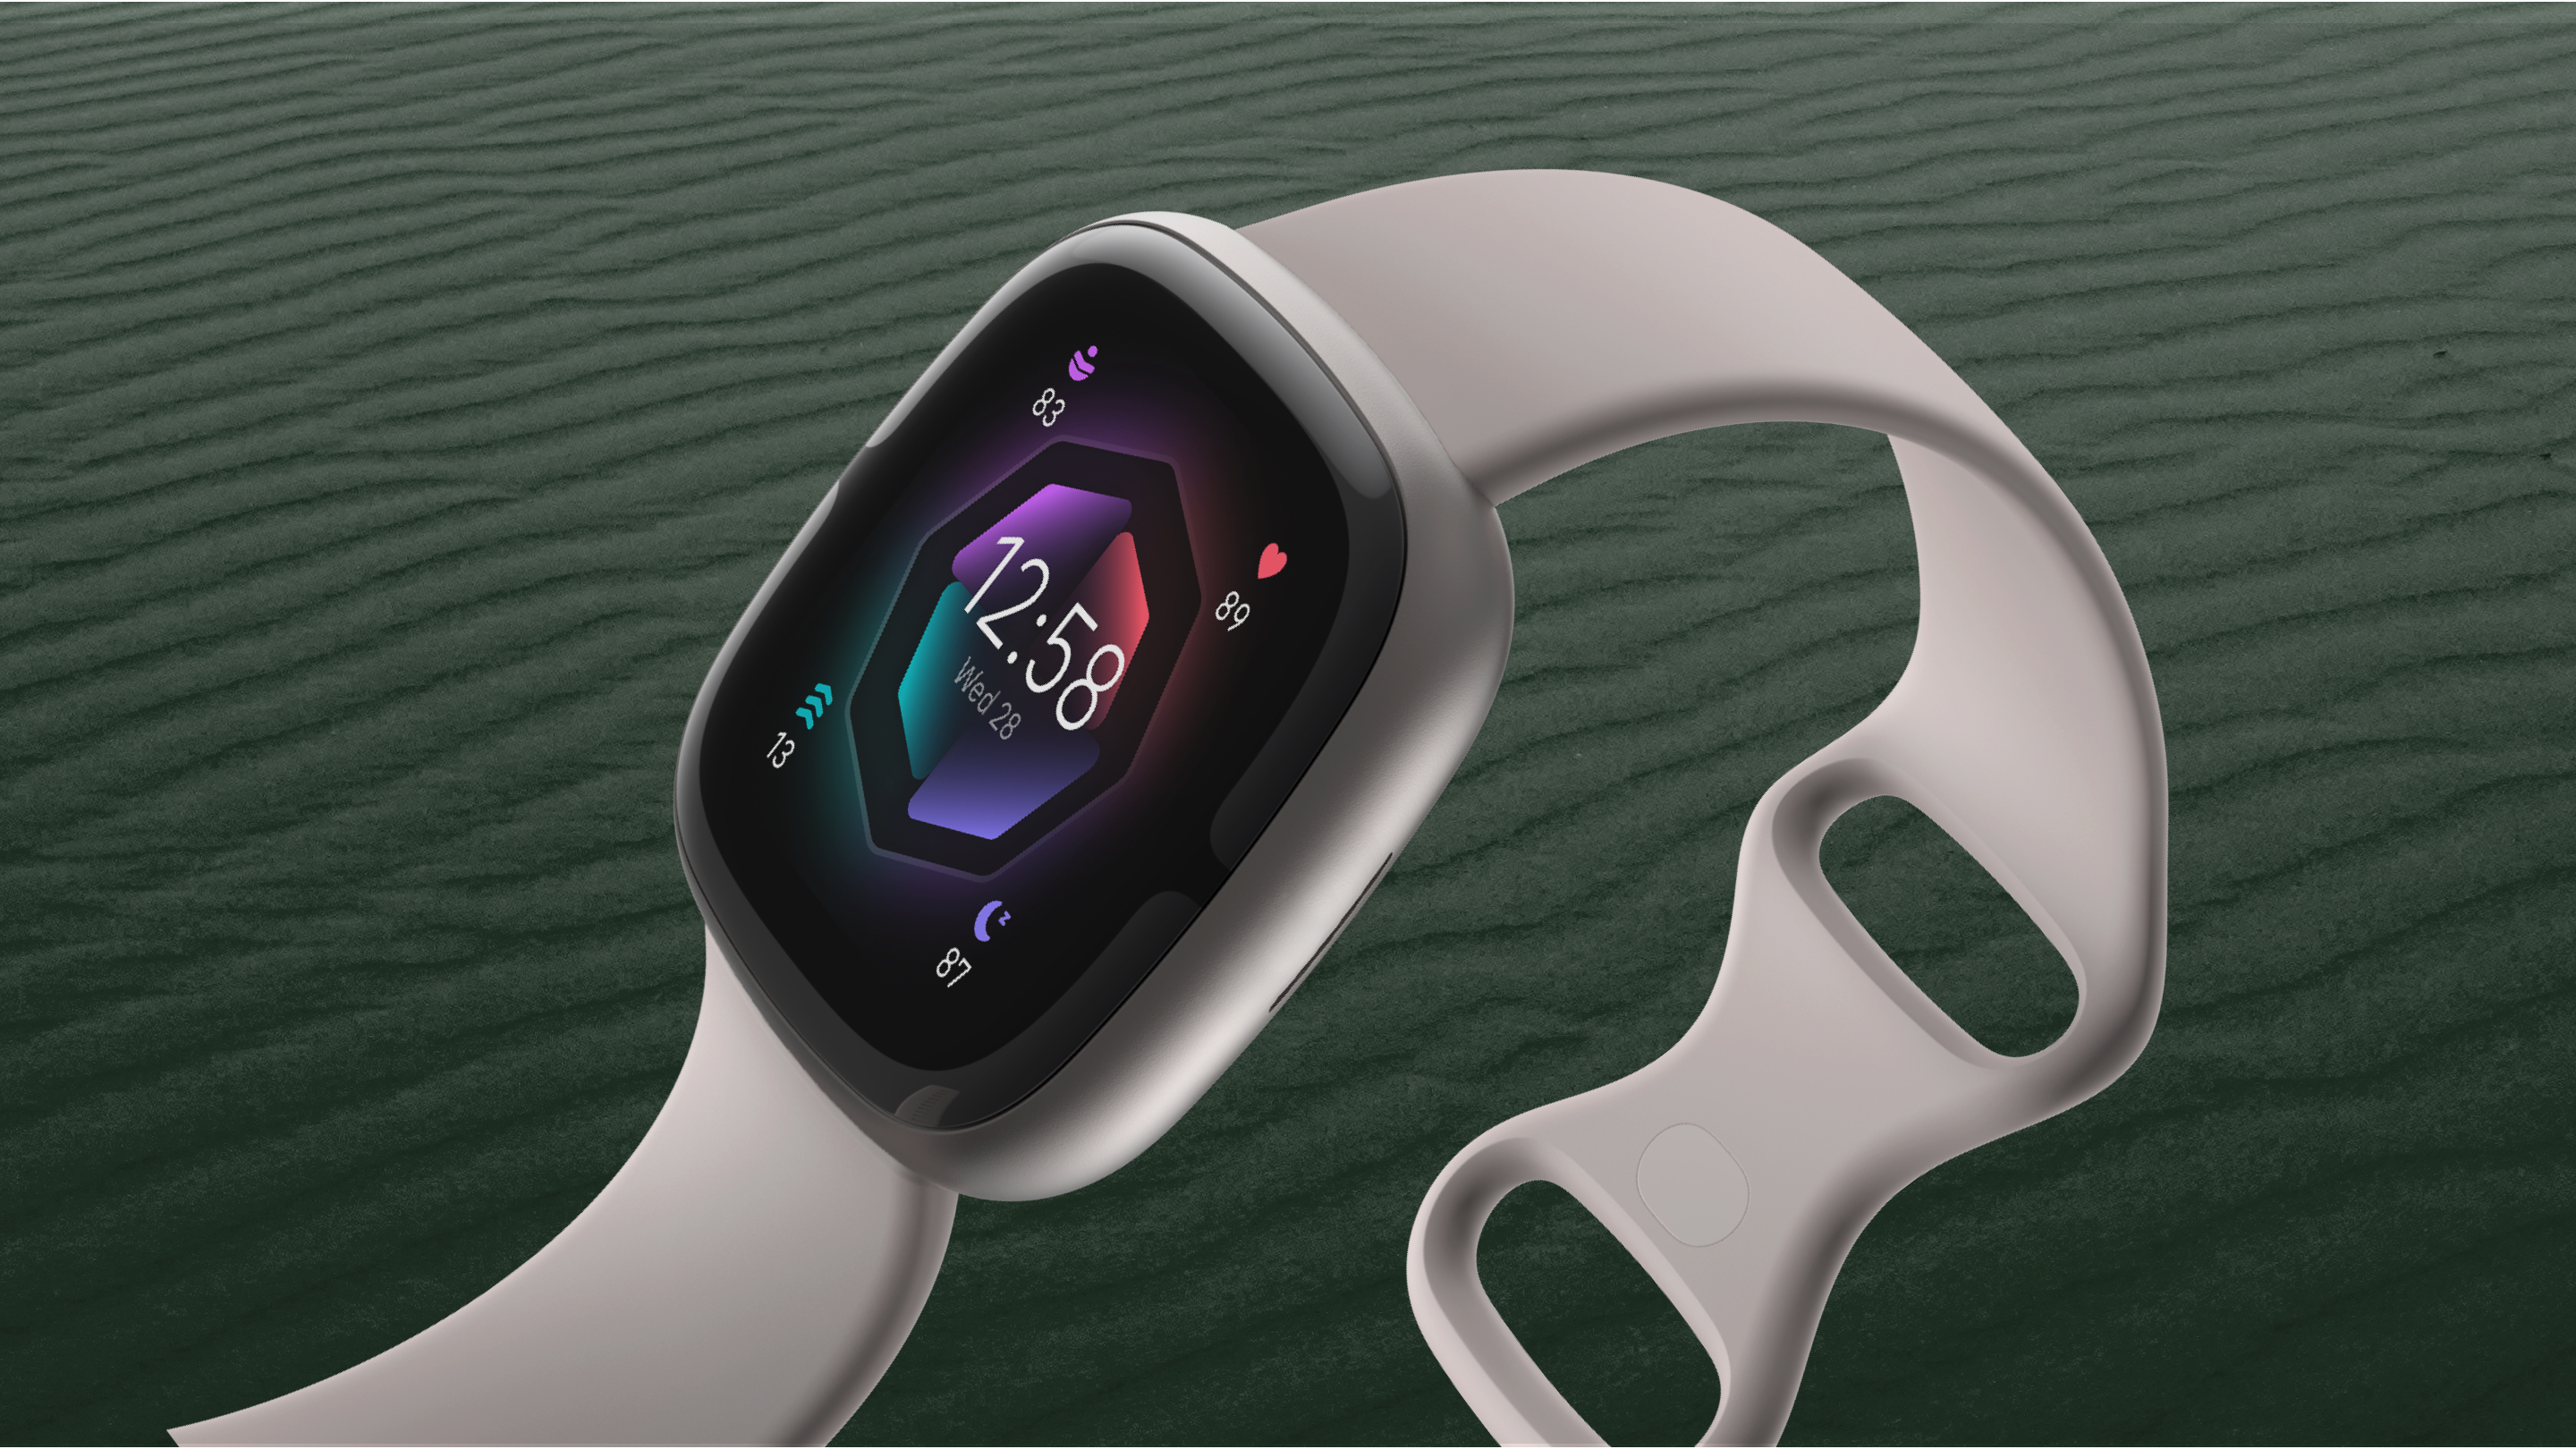 220 dollari di sconto: Google vende lo smartwatch Fitbit Sense 2 con sensore Body Response, sensore SpO2, GPS e NFC su Amazon a 79 dollari